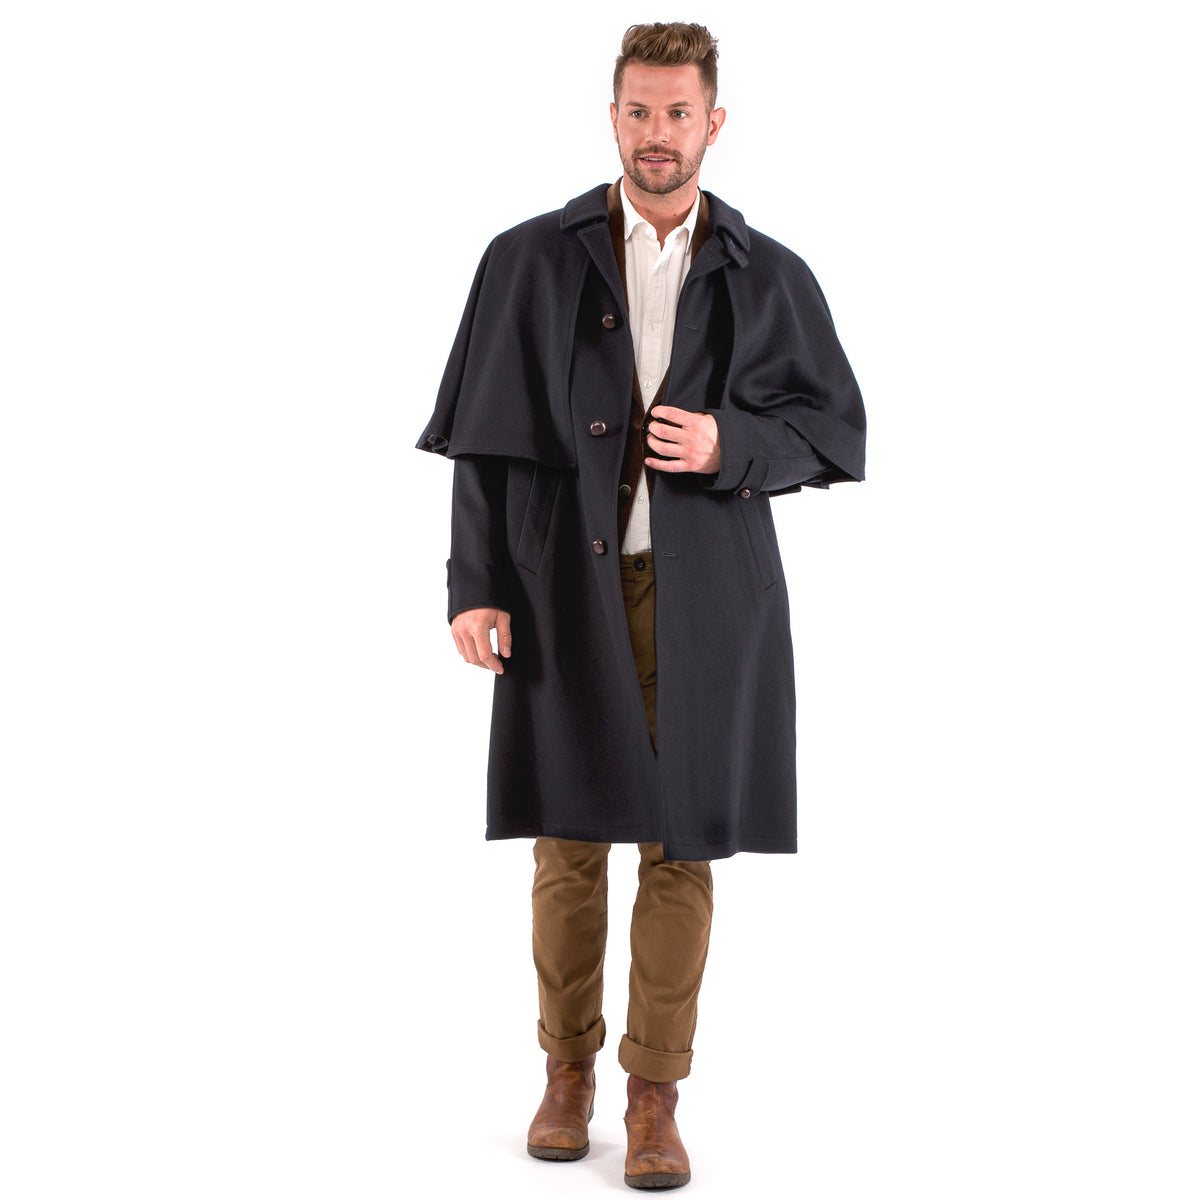 Holmes - Traditional Austrian Capelet Coat or Inverness Coat - Robert W ...